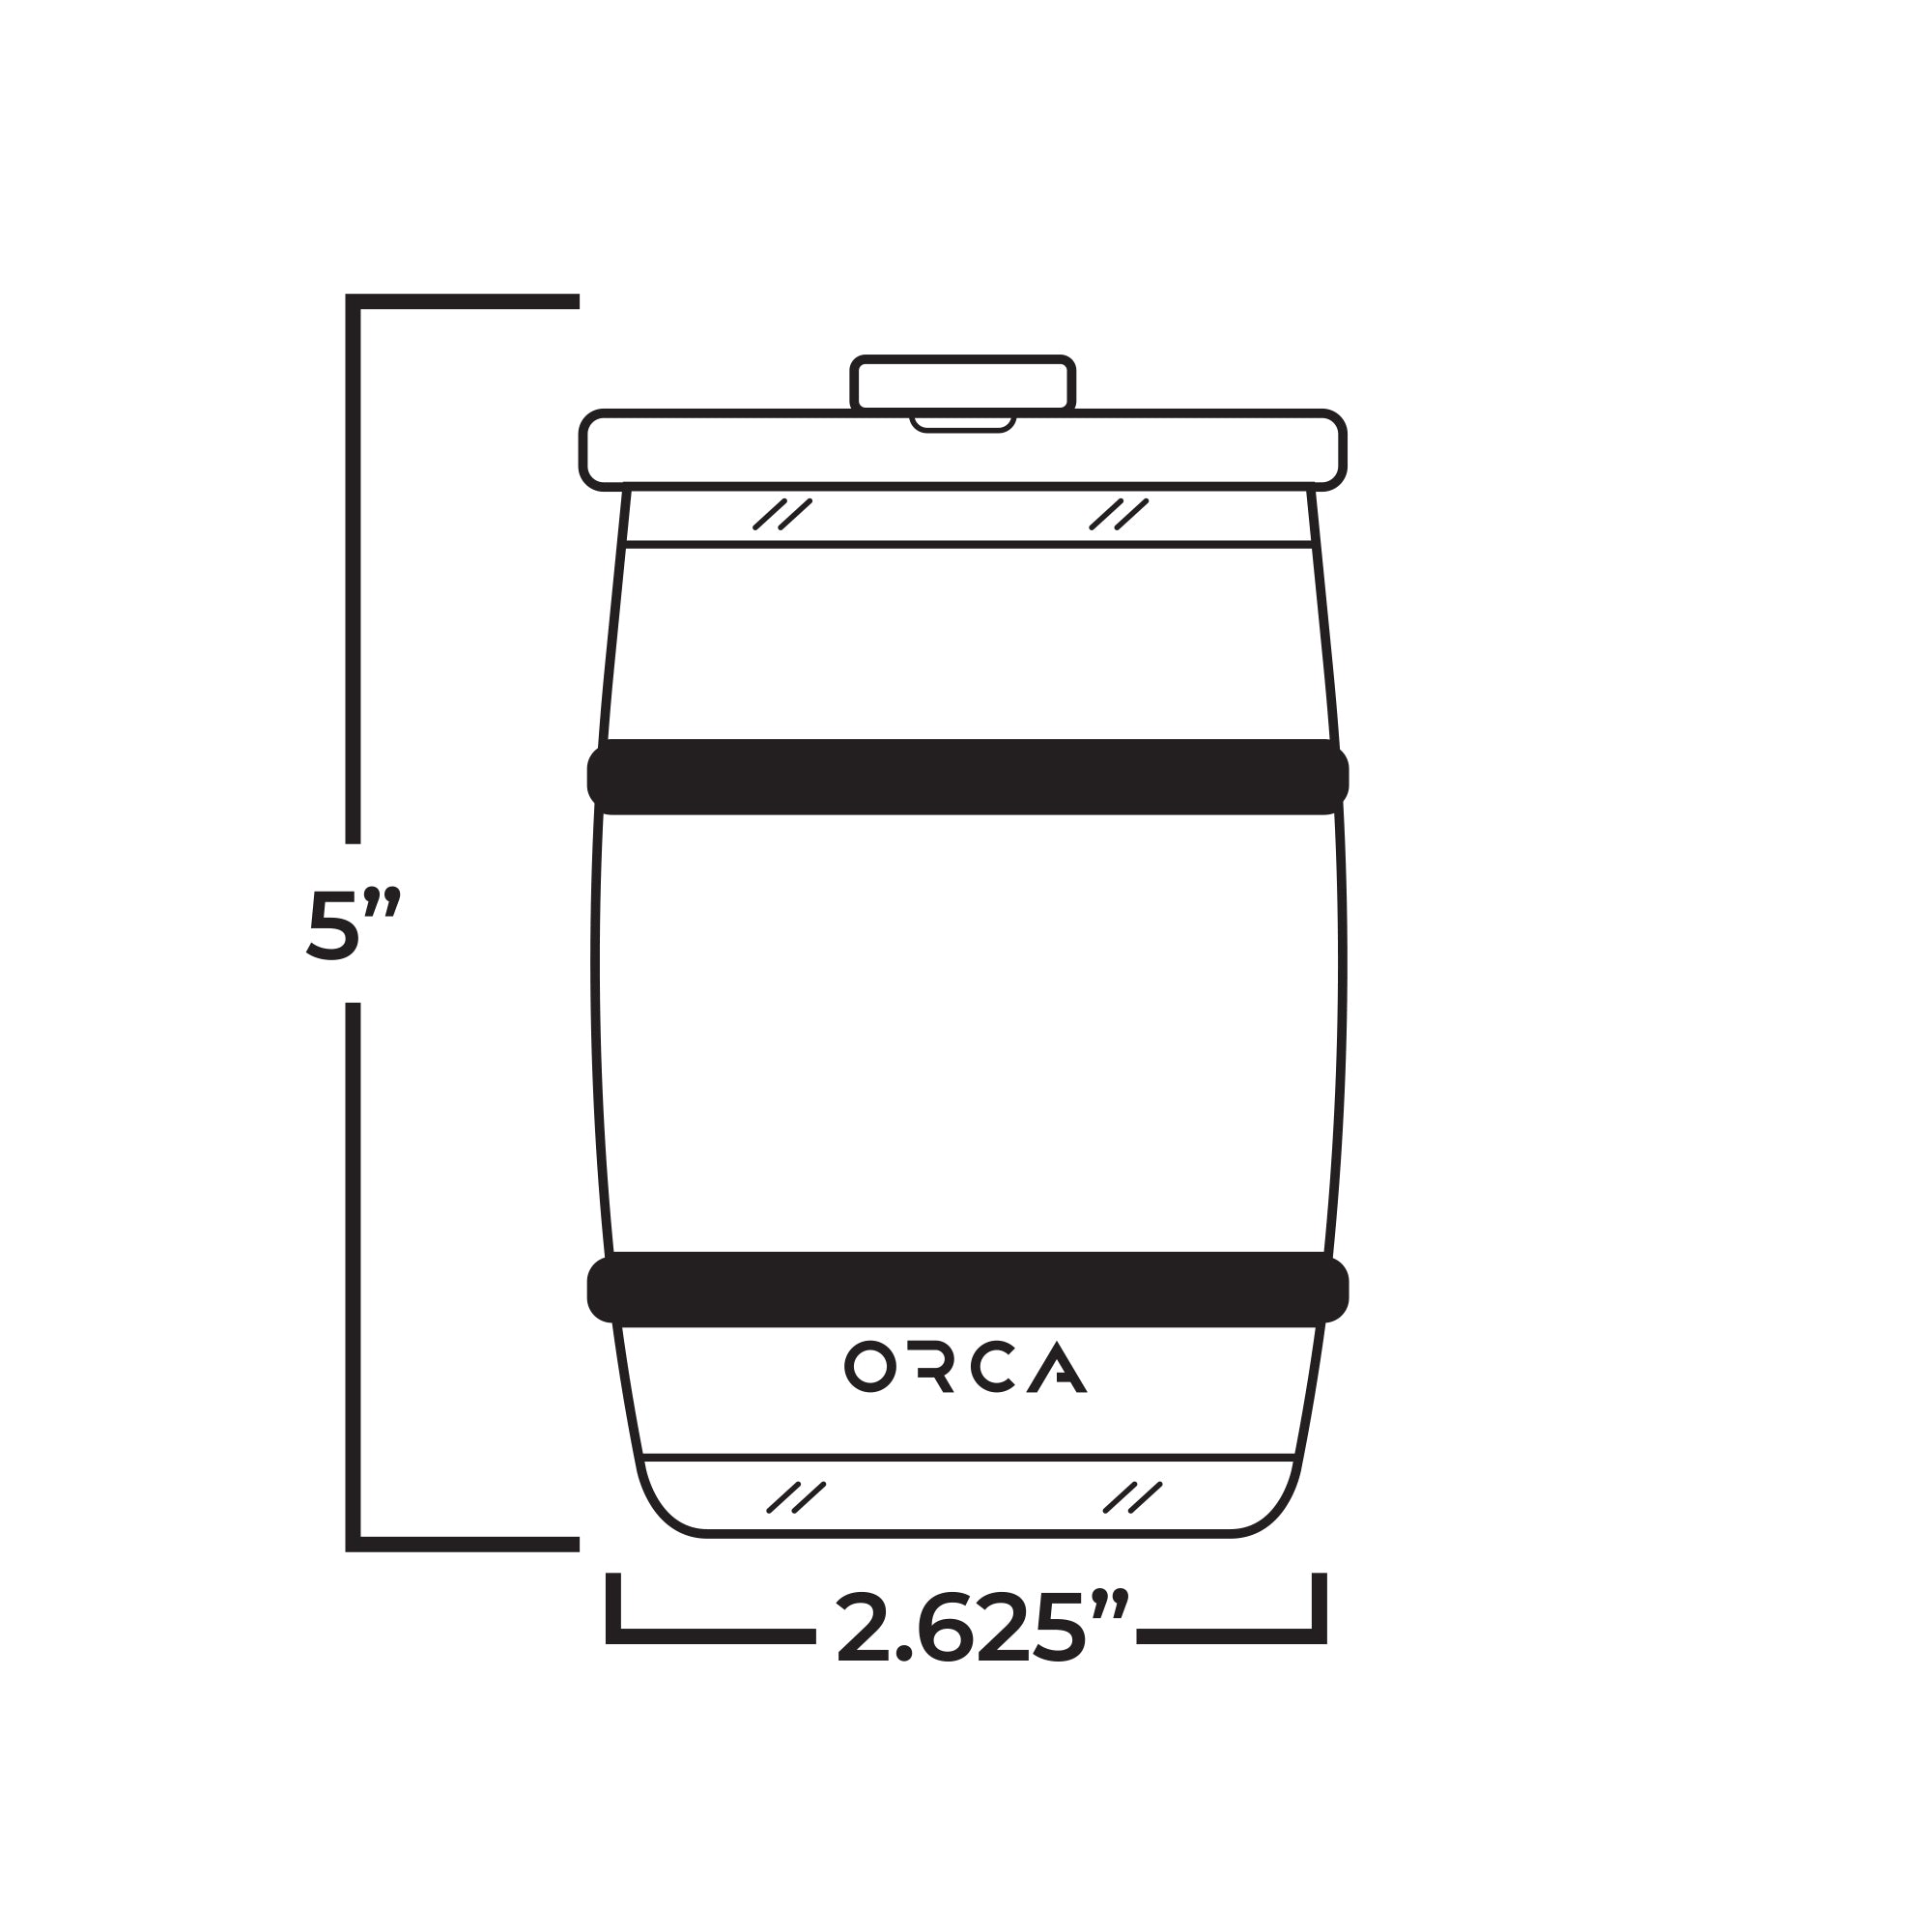 Barrel 12oz, Technical Specs, Line Drawing